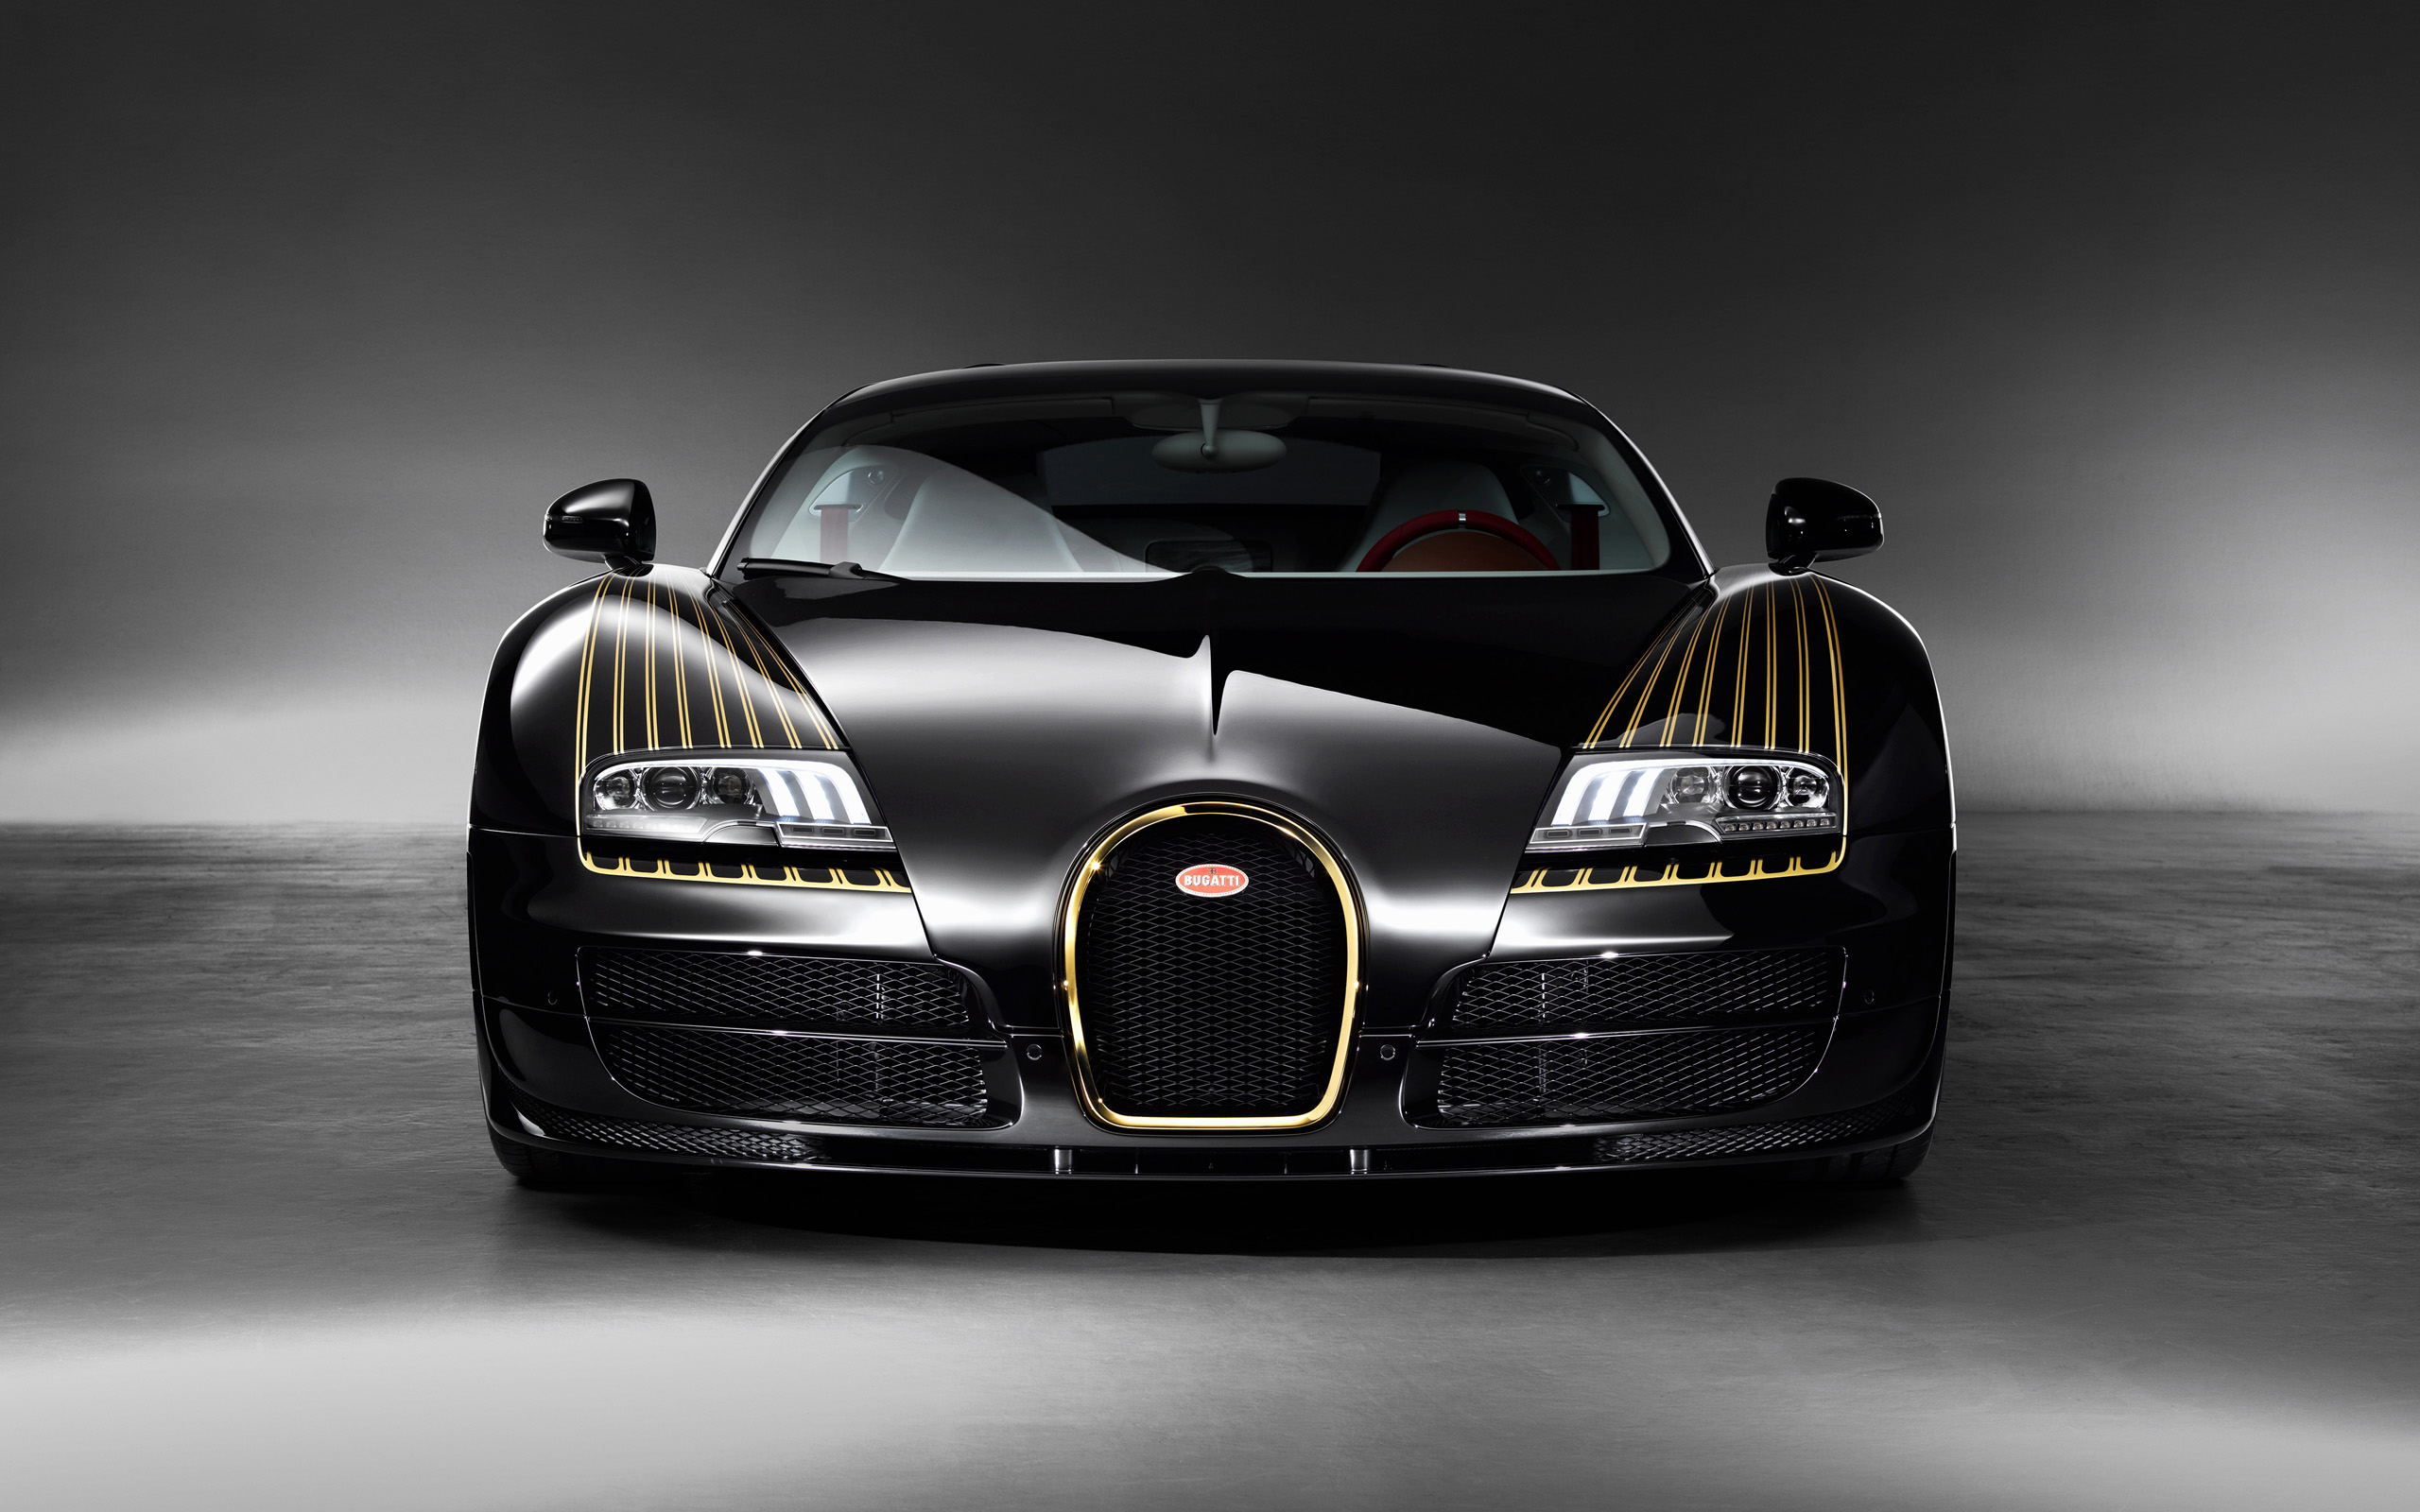 2014 Bugatti Veyron Grand Sport Vitesse Legend Black Bess 2 Wallpaper Hd Car Wallpapers Id 4385